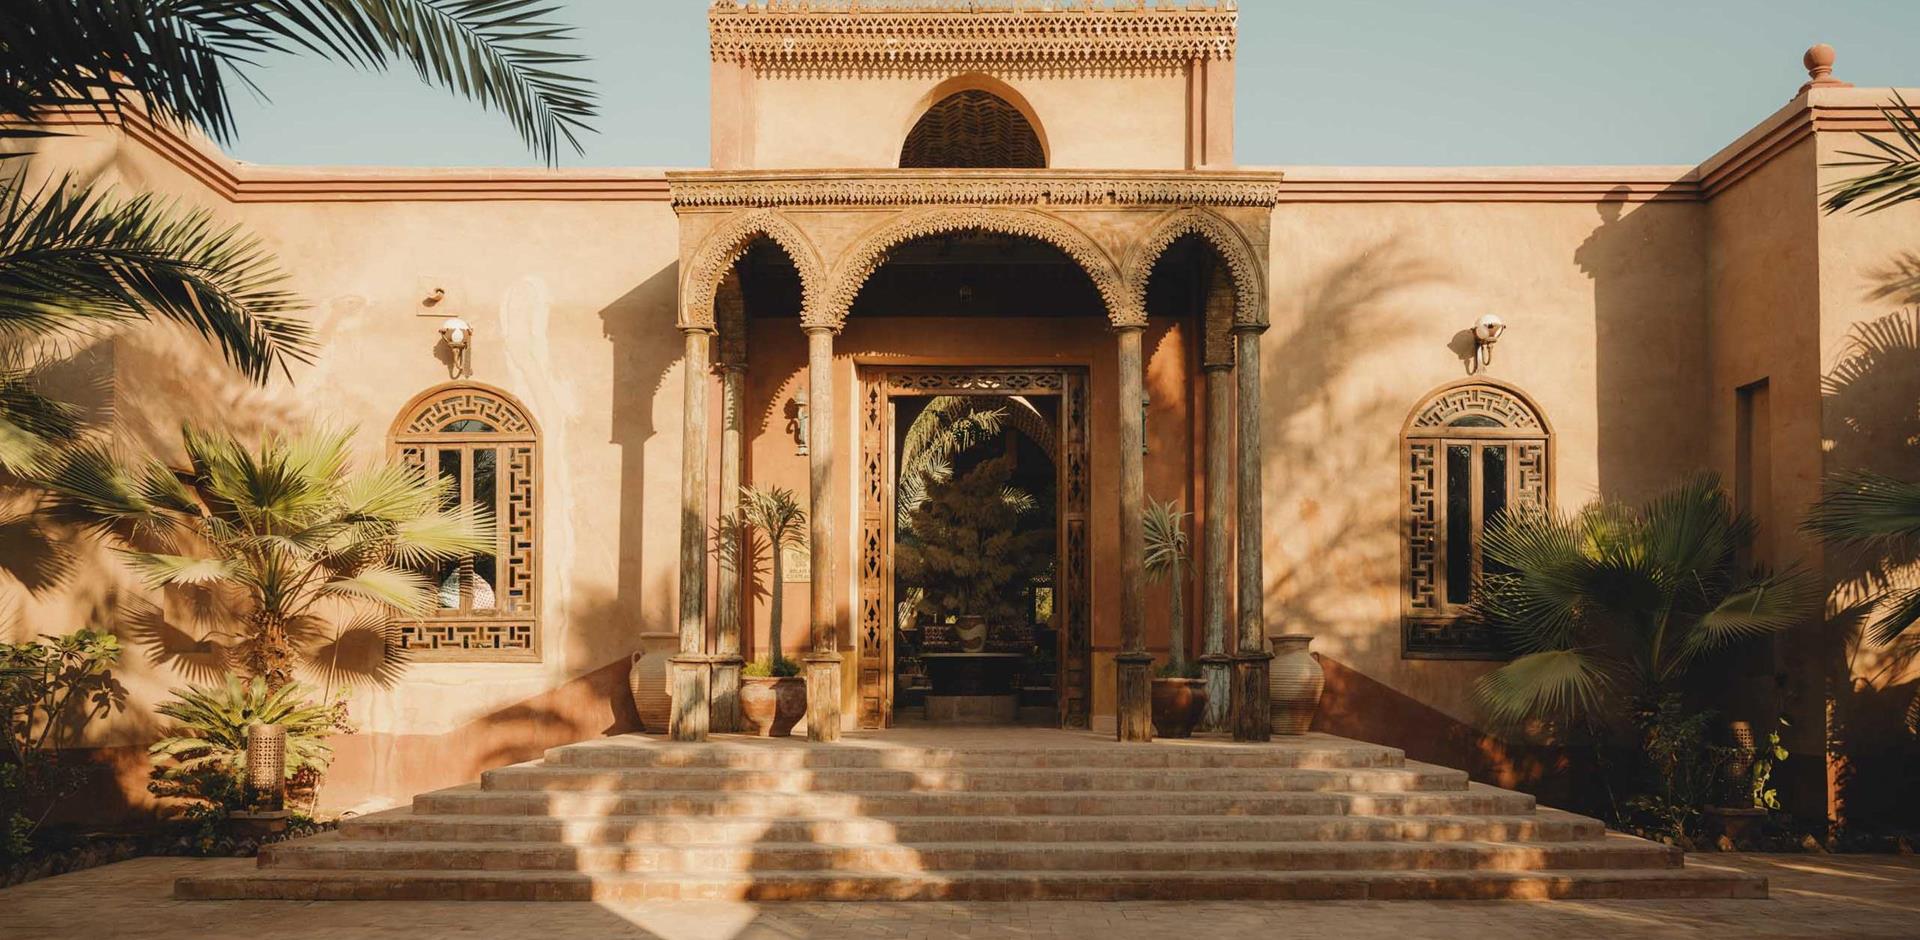 Entrance, Al Moudira, Egypt